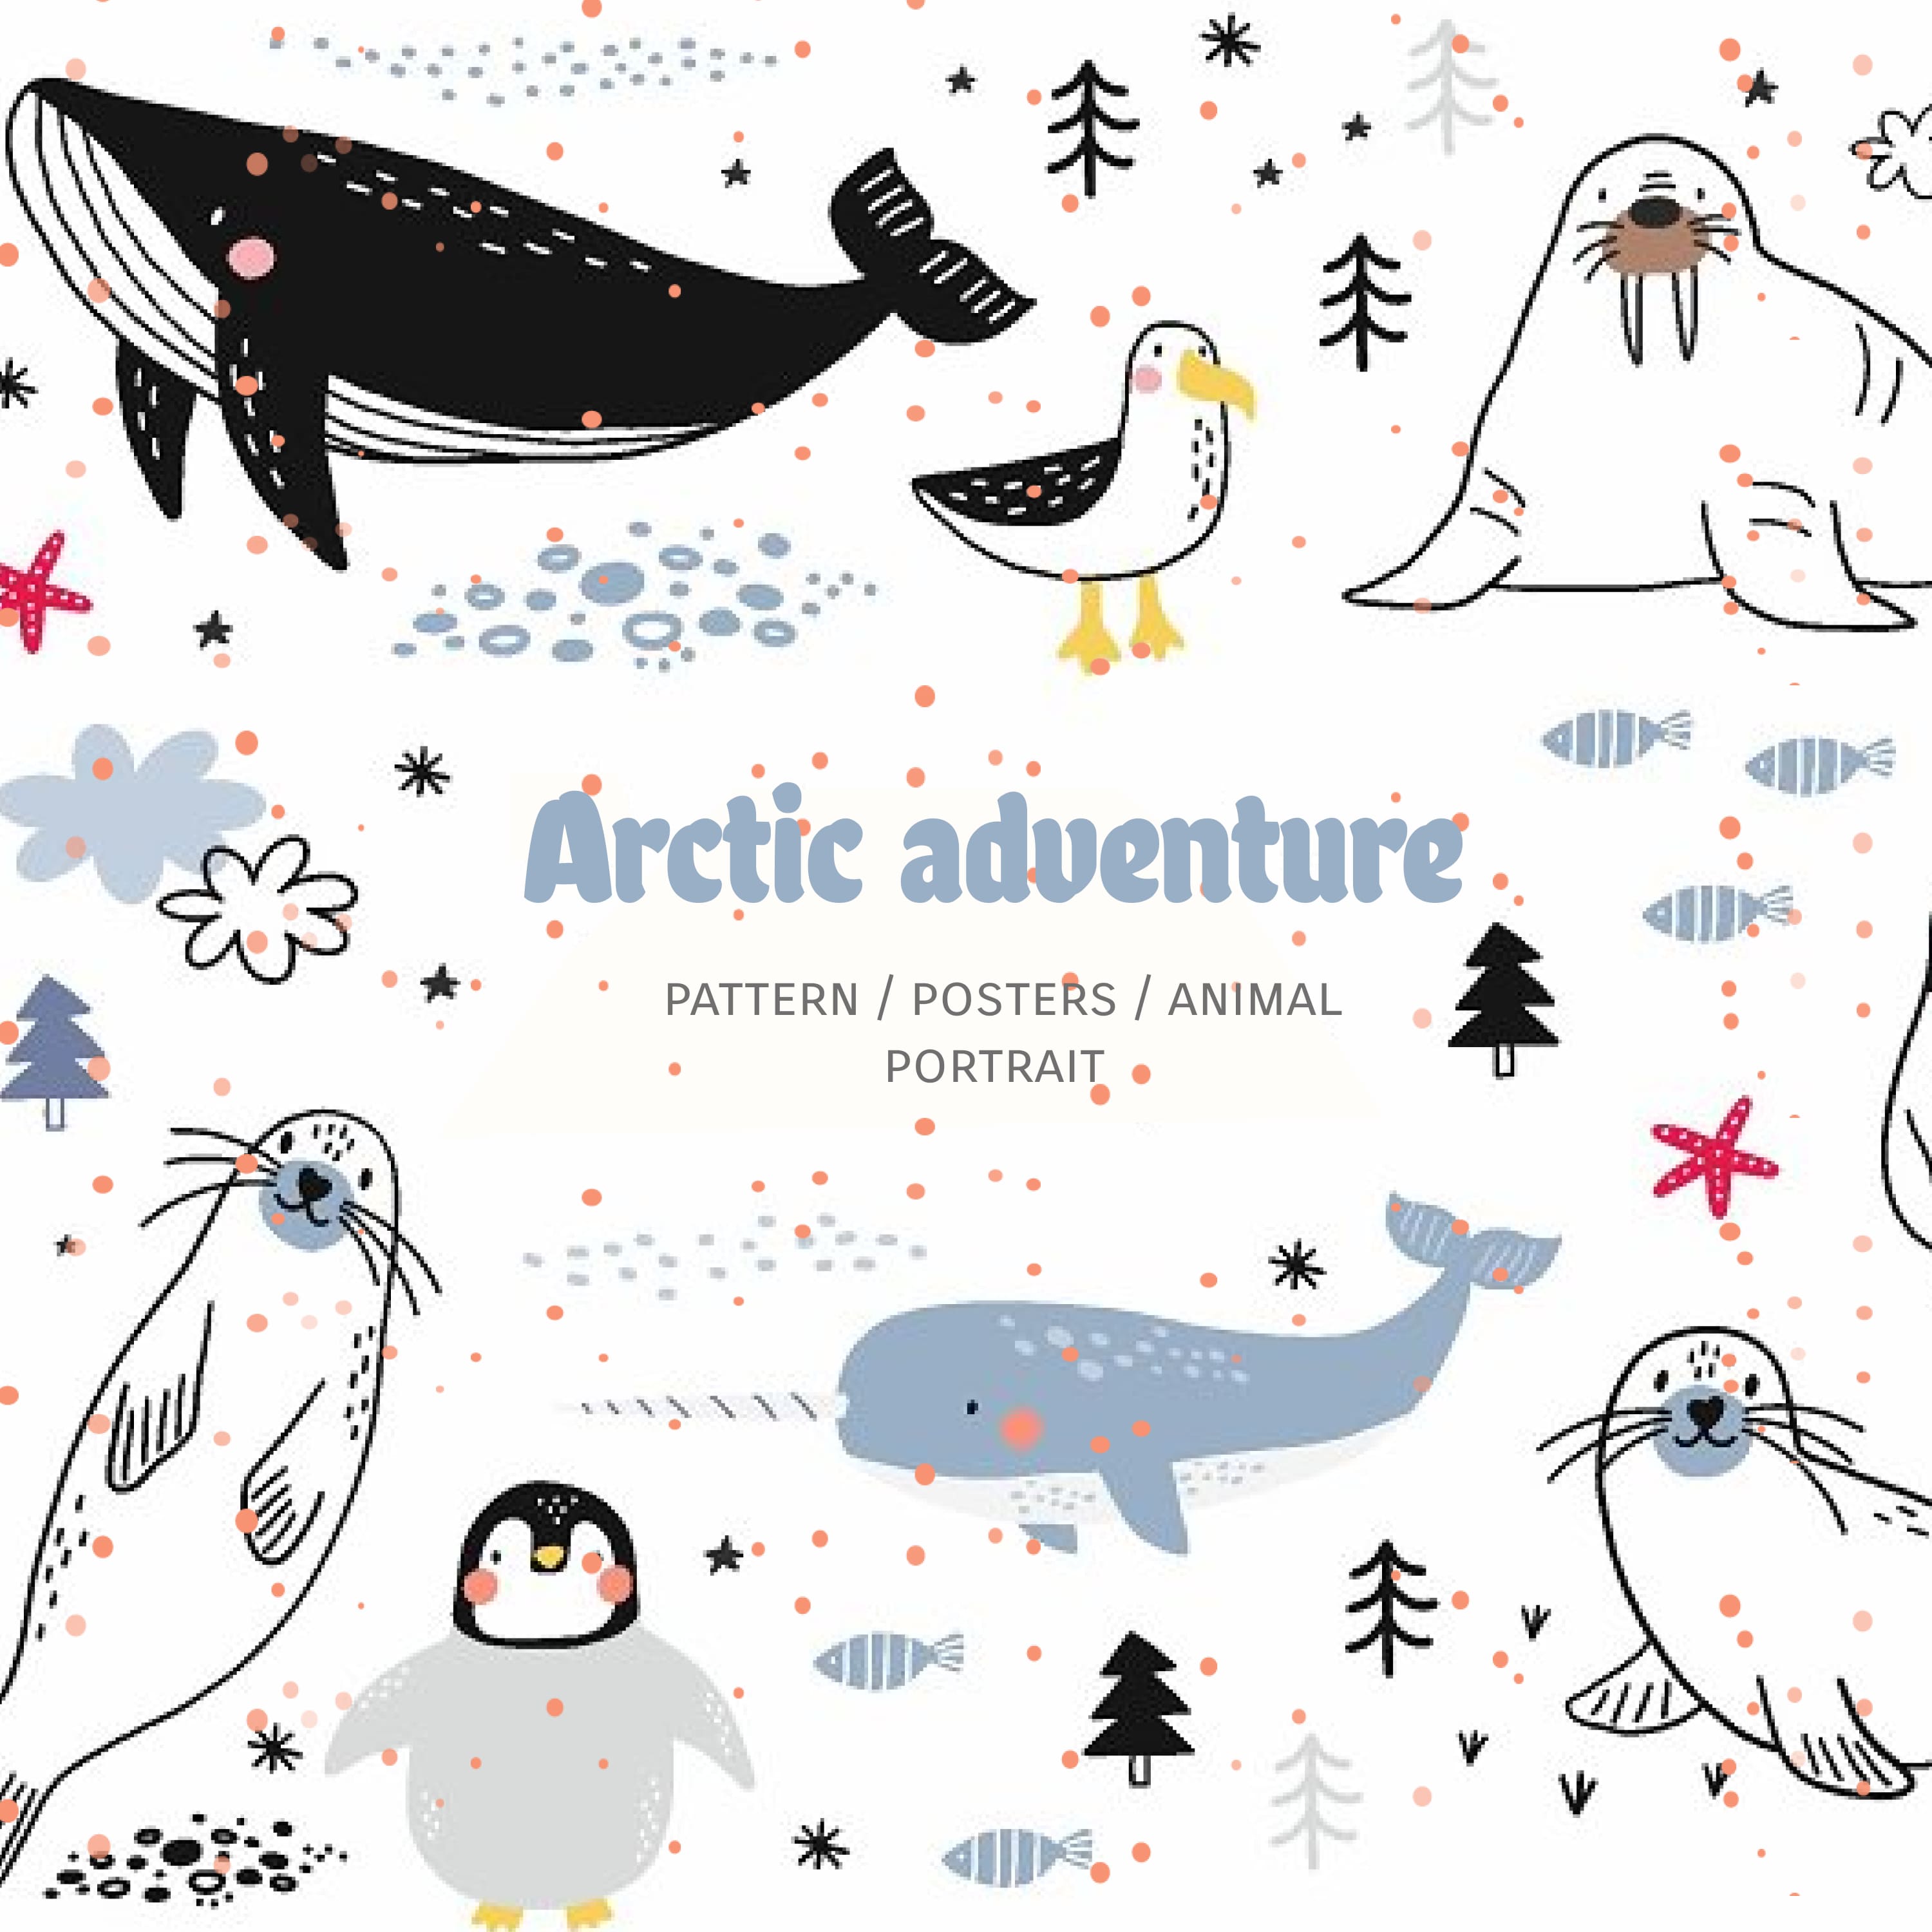 Arctic adventure - cute animals cover.